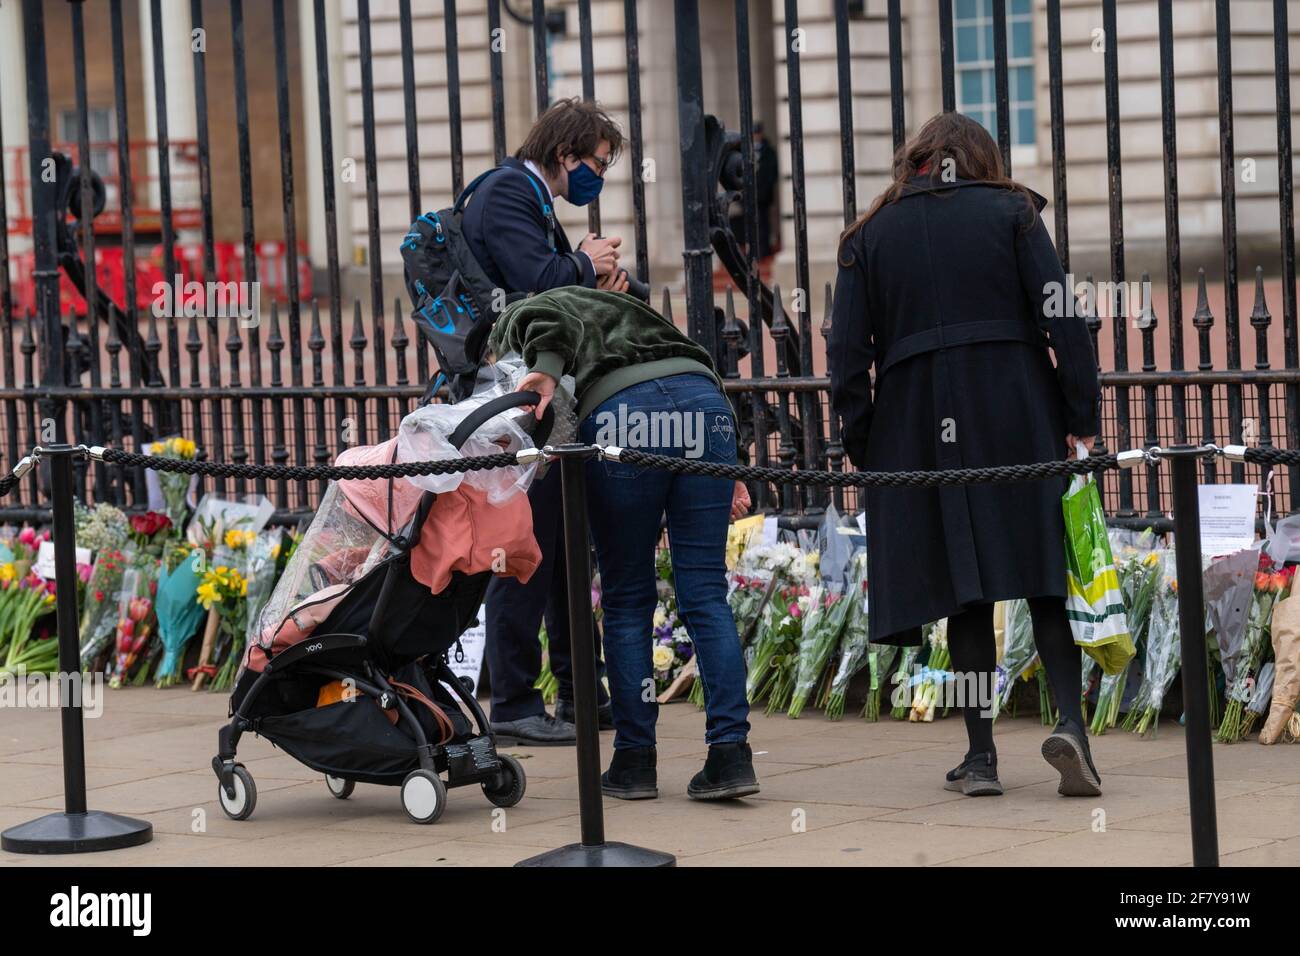 Londres, Royaume-Uni. 10 avril 2021. Des foules se rassemblent devant le palais de Buckingham pour déposer des hommages floraux à la suite de la mort de HRH le prince Philip, duc d'Édimbourg crédit : Ian Davidson/Alay Live News Banque D'Images